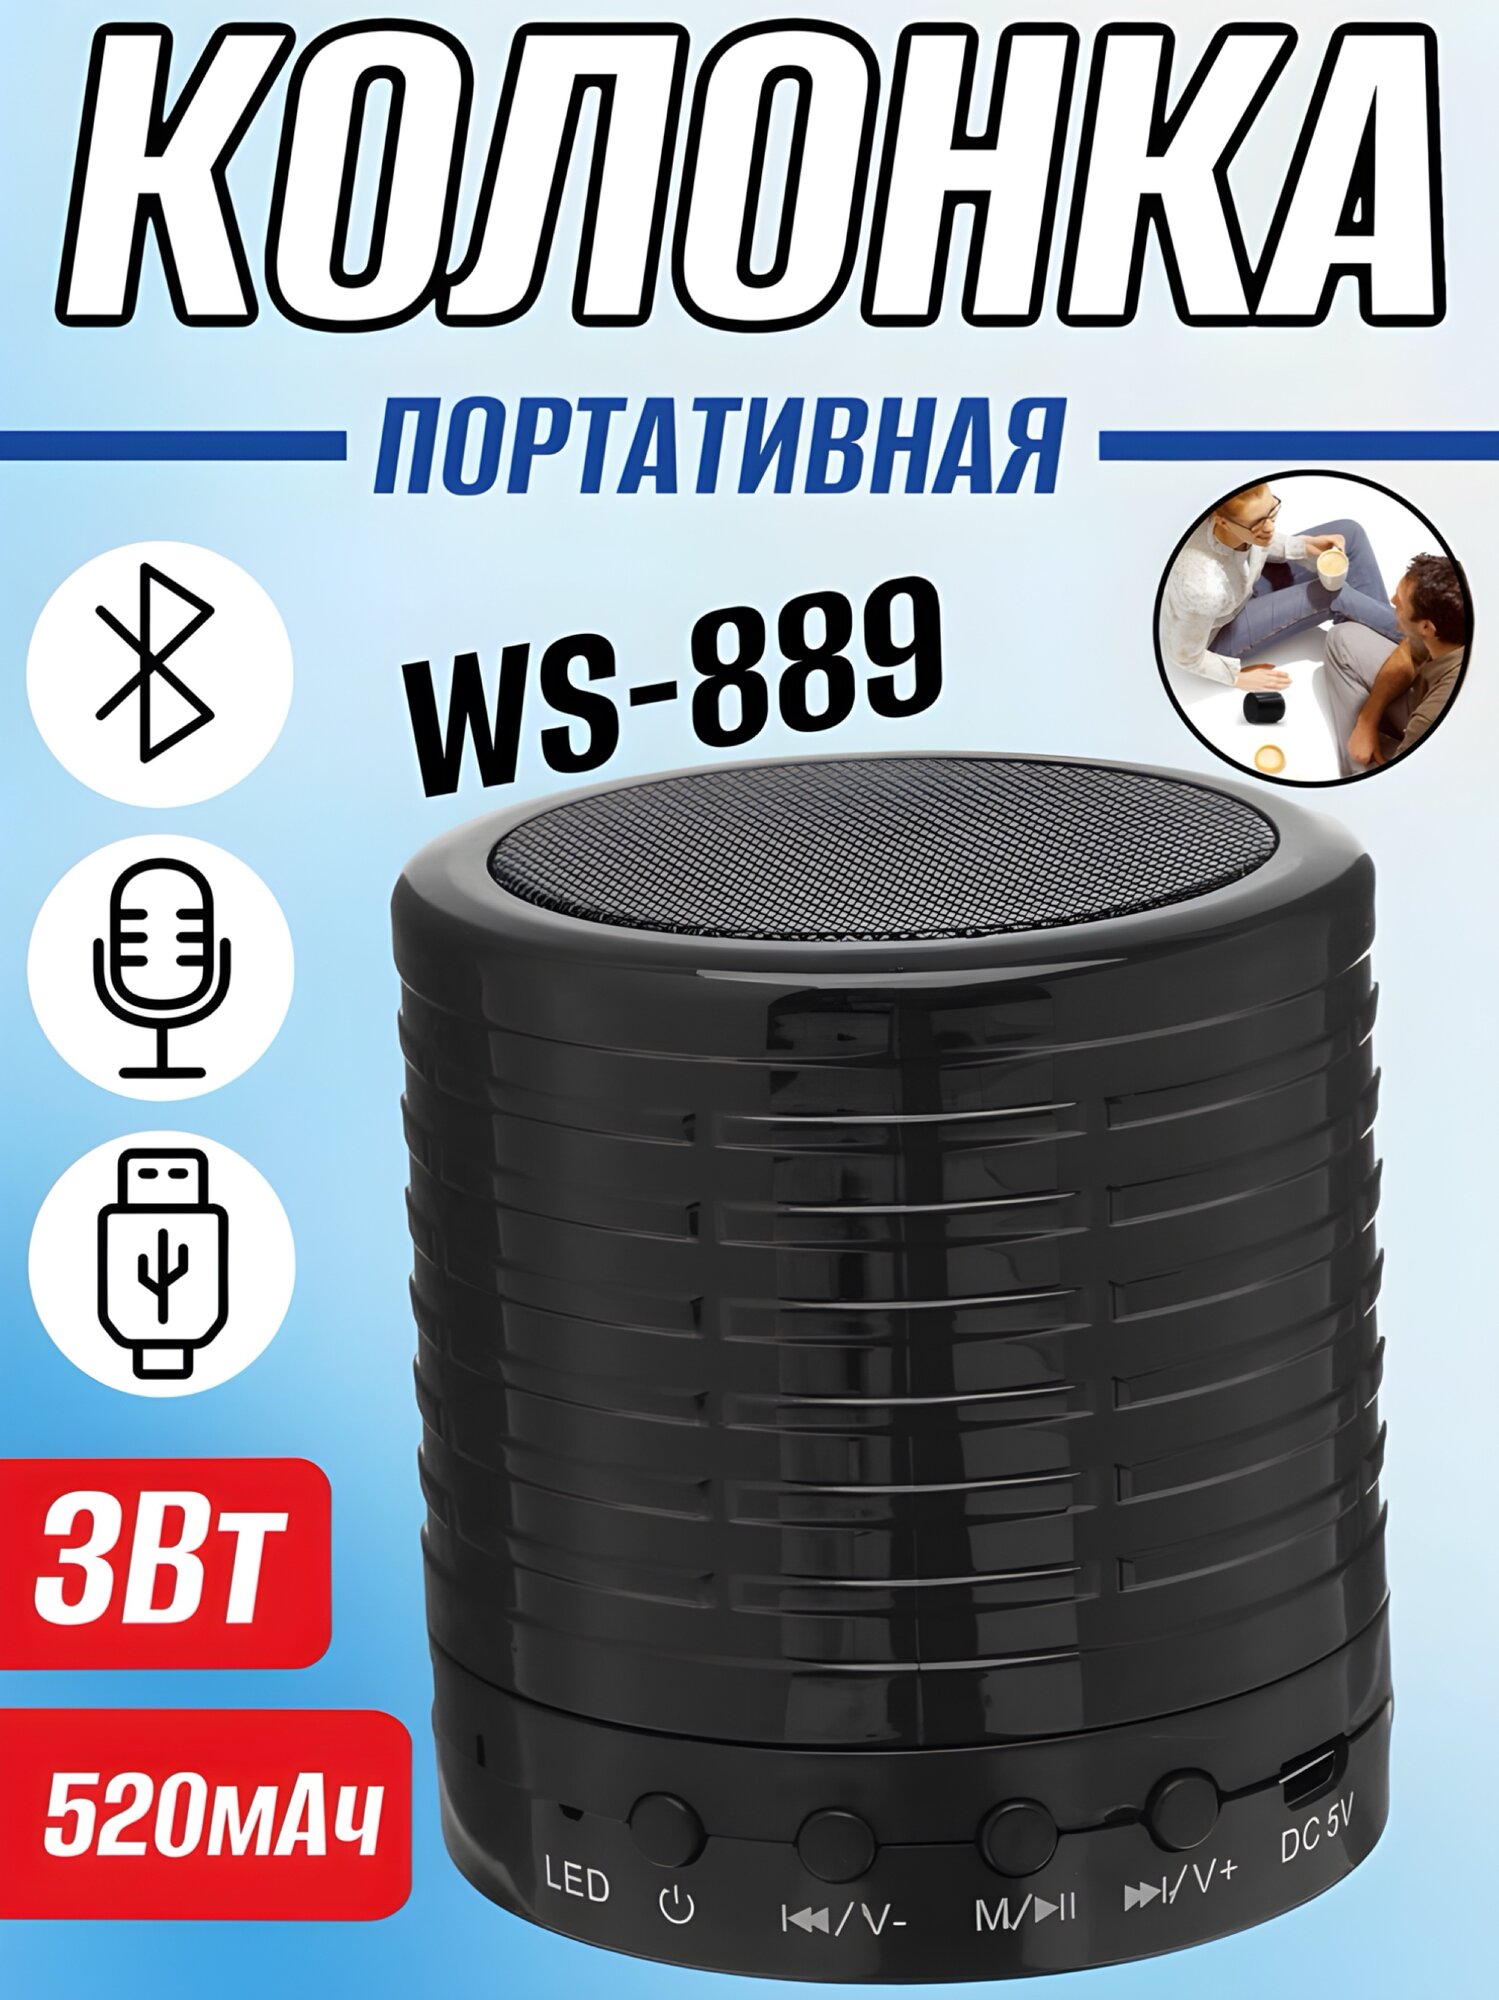 Портативная колонка WS-889, 3 Вт, Bluetooth/USB/MicroSD, 520 мАч, чёрная